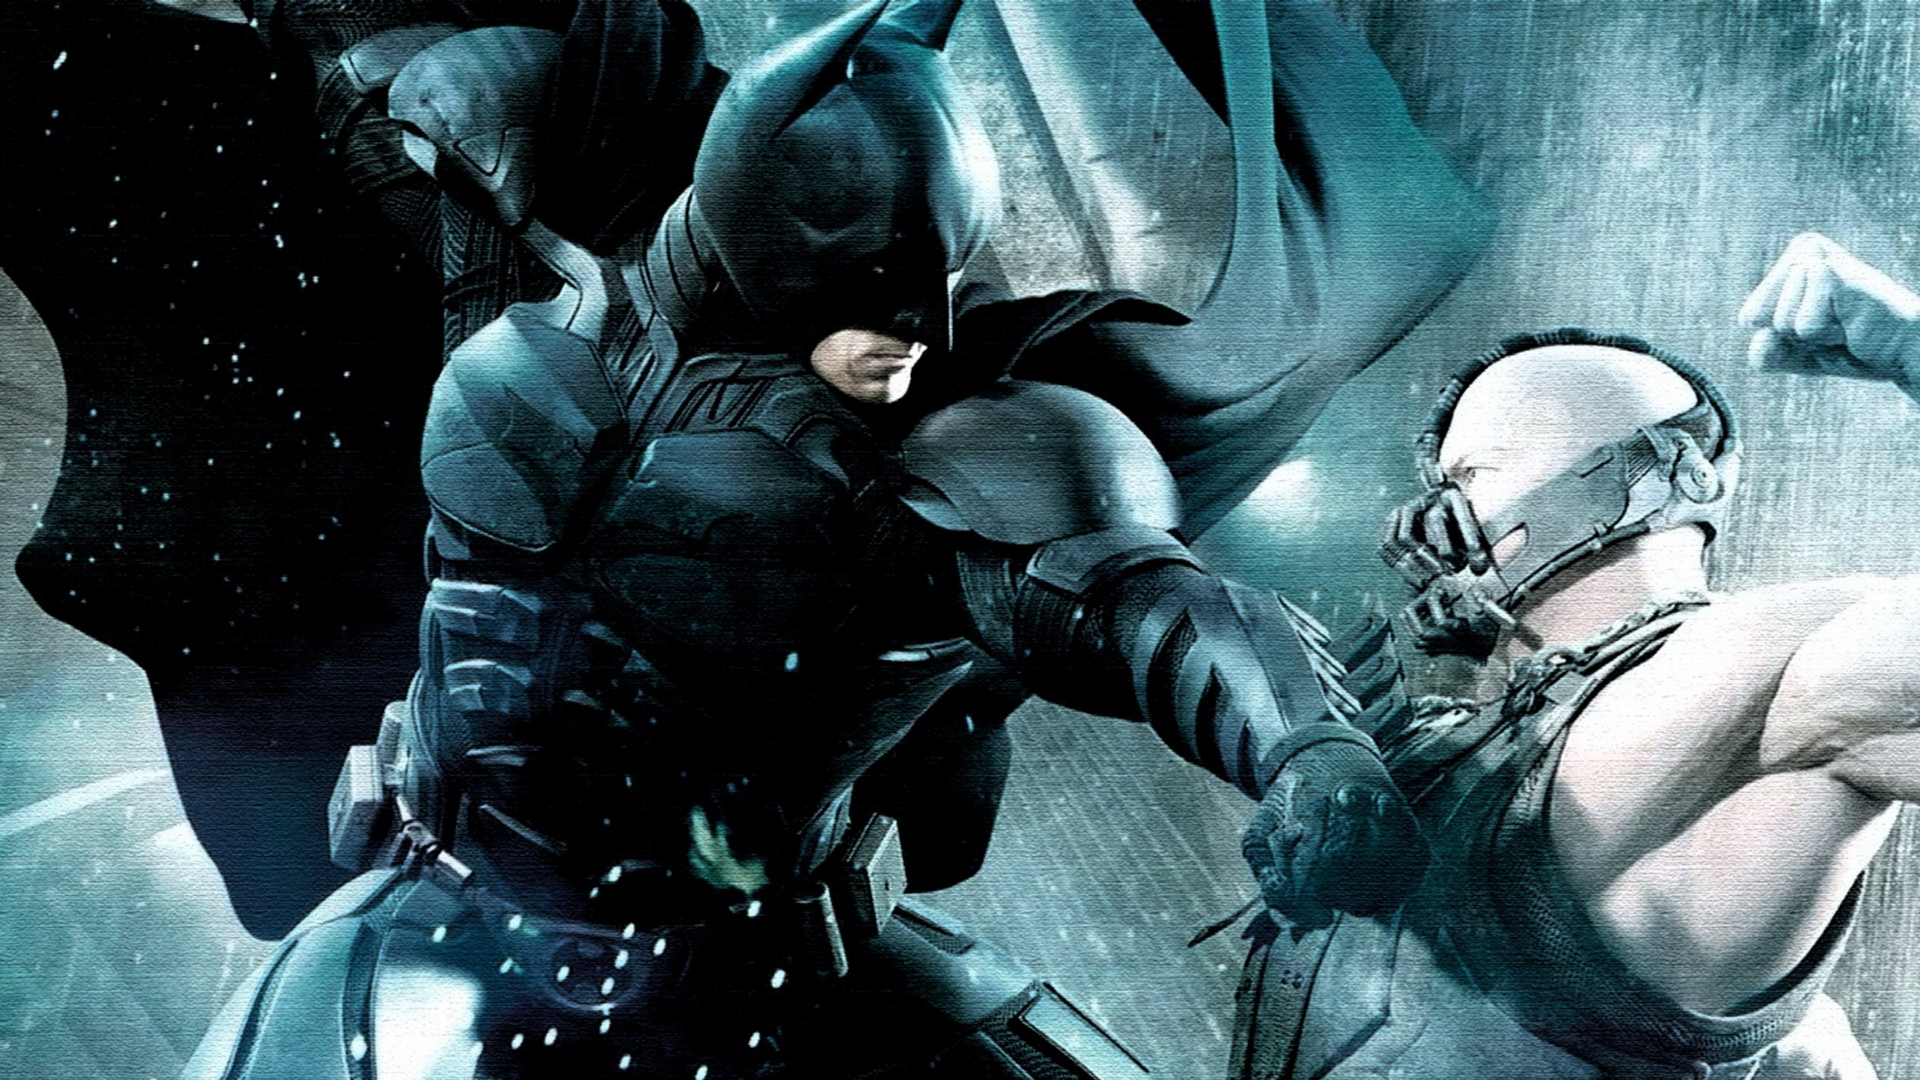 batman the dark knight rises hd full movie download